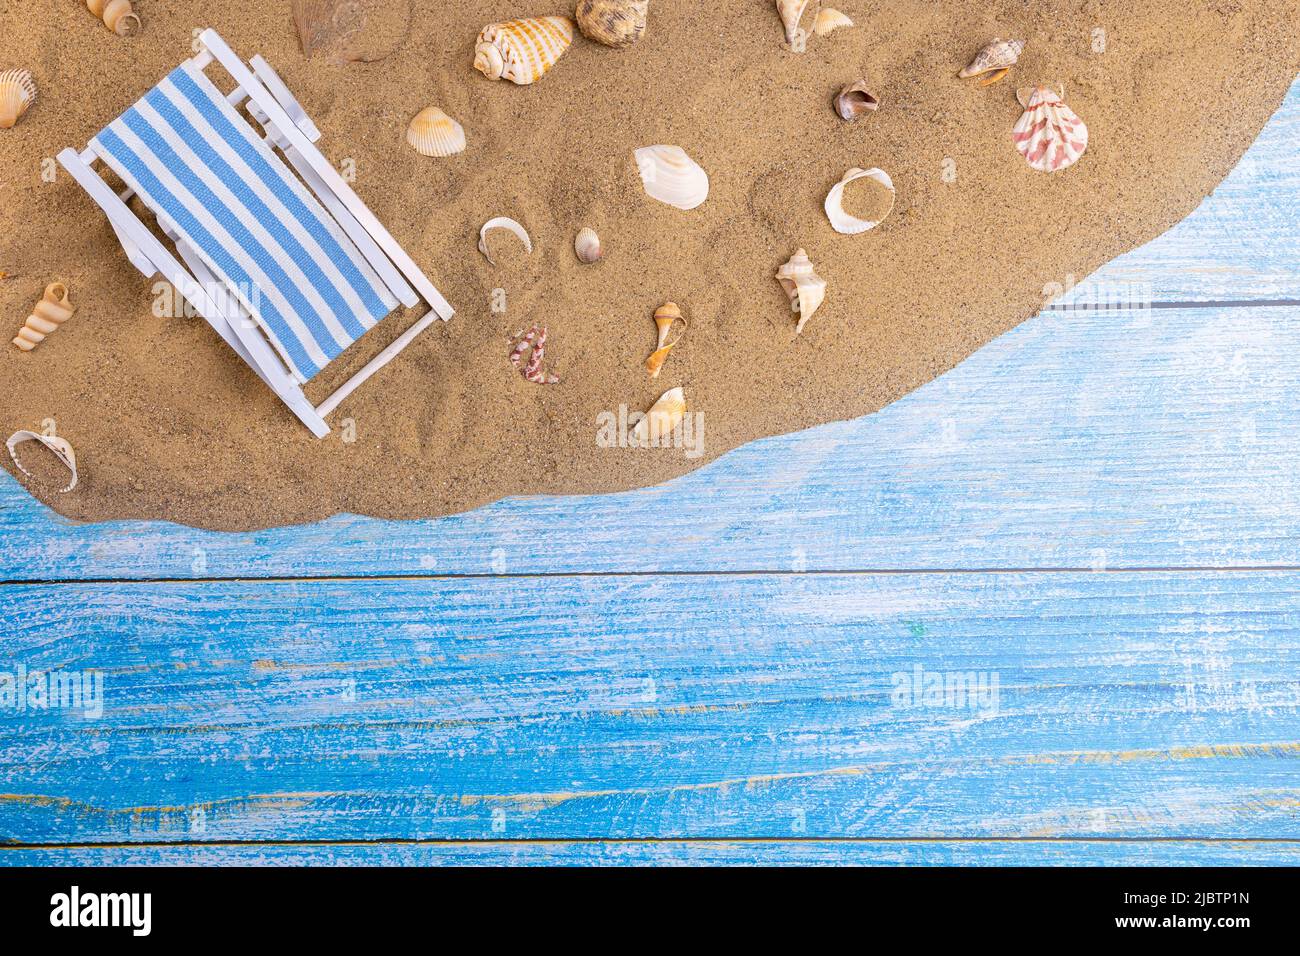 Chaise longue et coquillages sur le sable sur fond bleu. Vacances d'été, plage, détente, mer, océan, concept de voyage. Banque D'Images